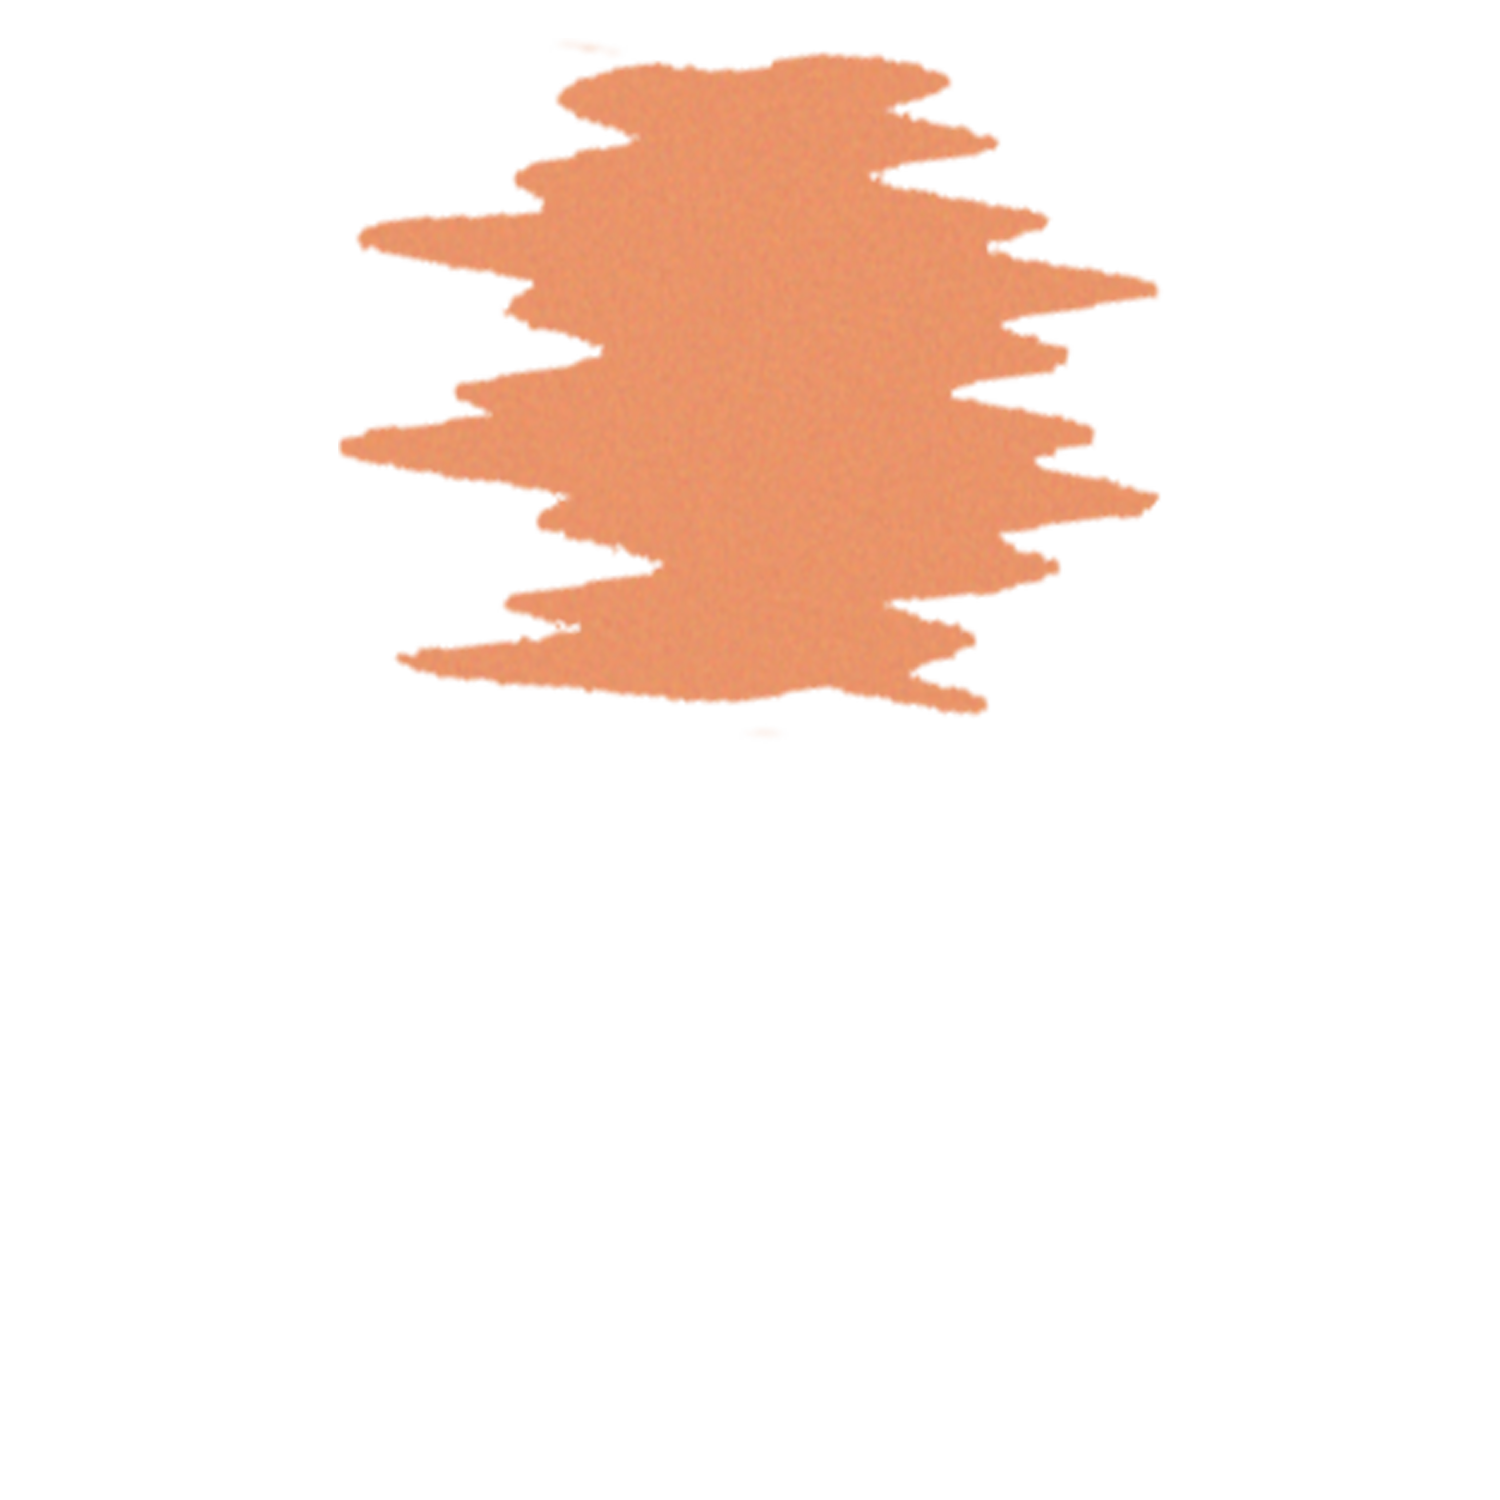 MATT ZORN art